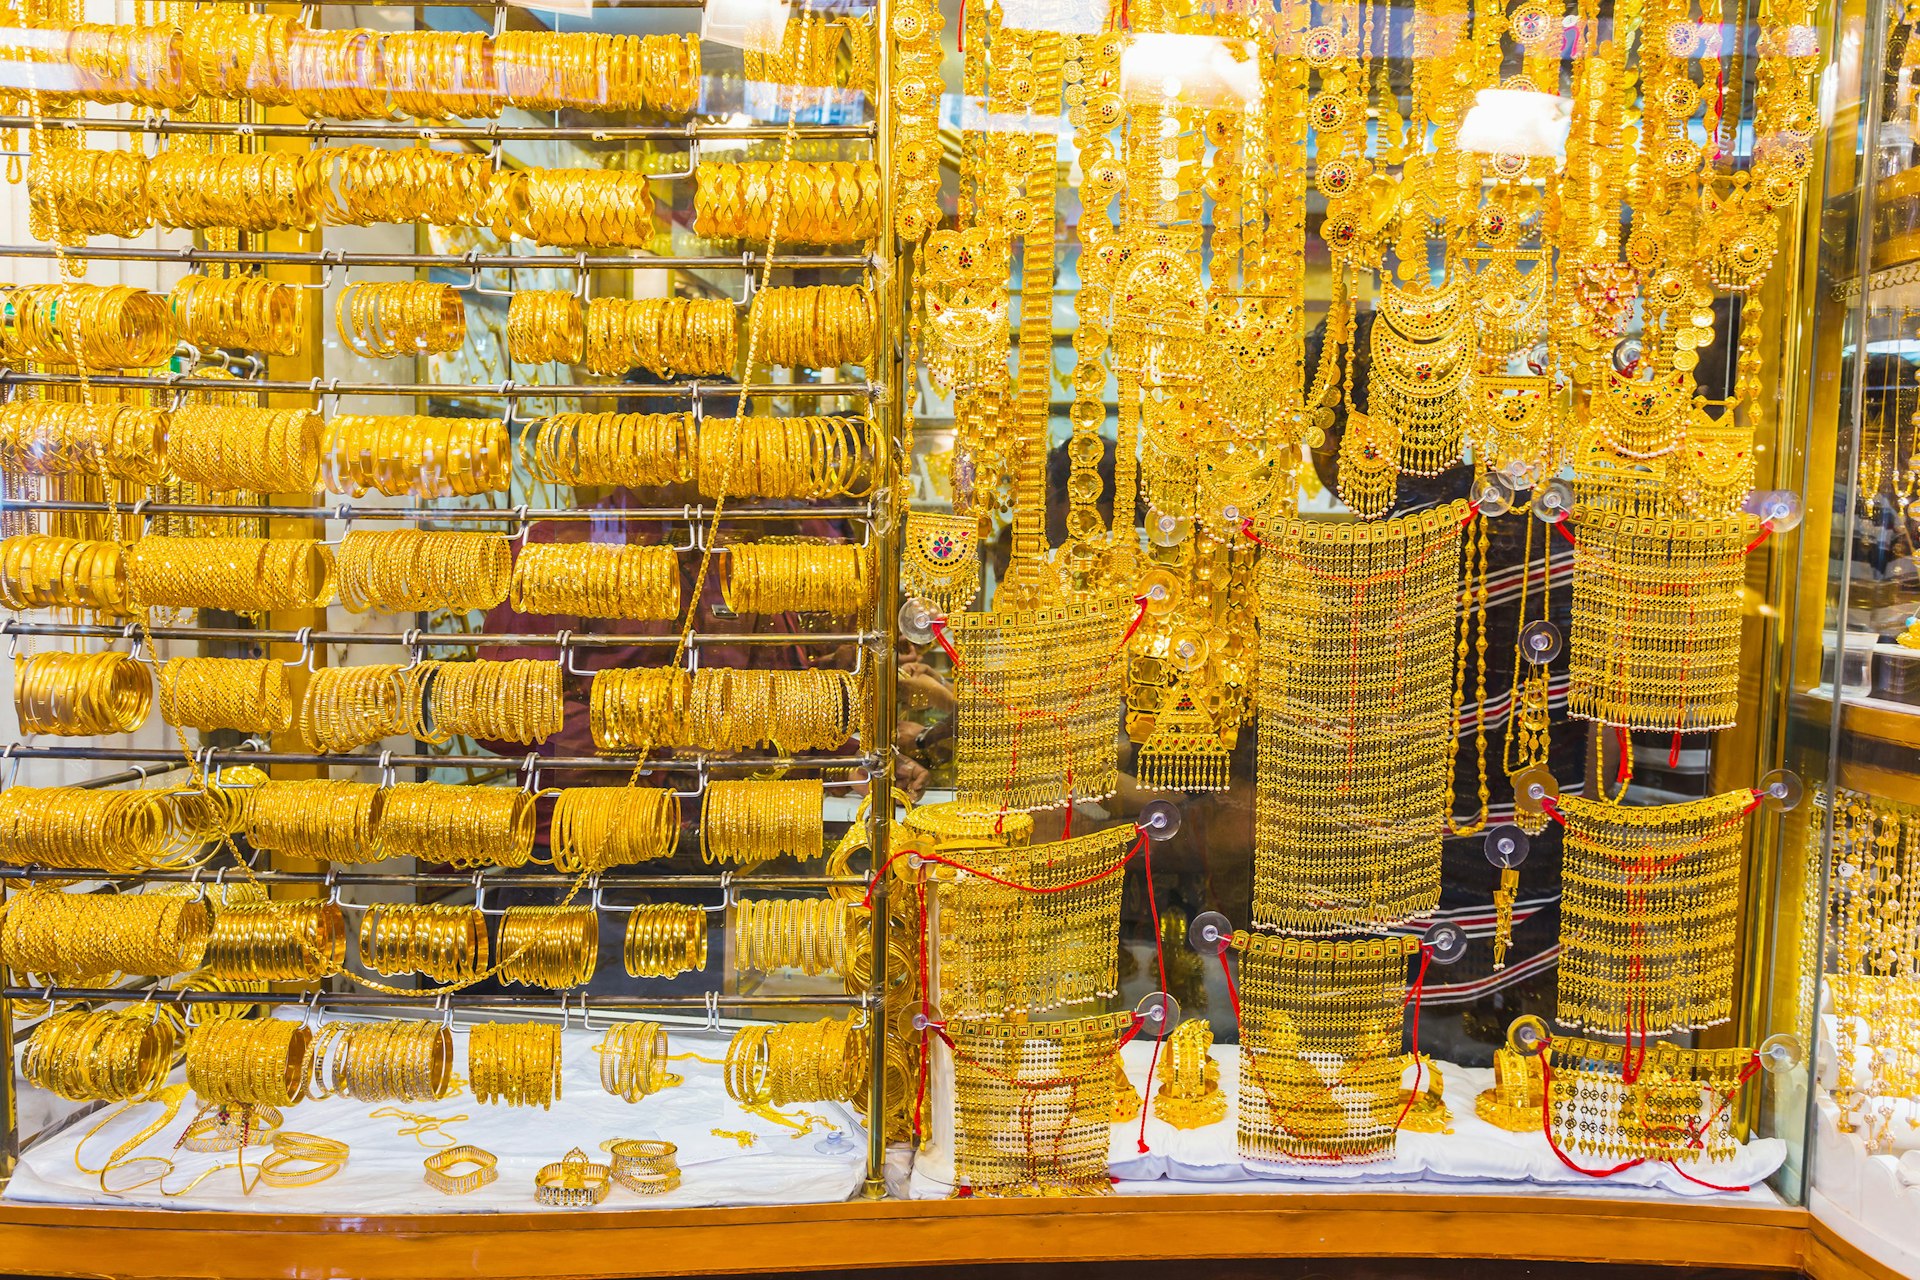 Jewelry at the Gold Souq in Deira, Dubai